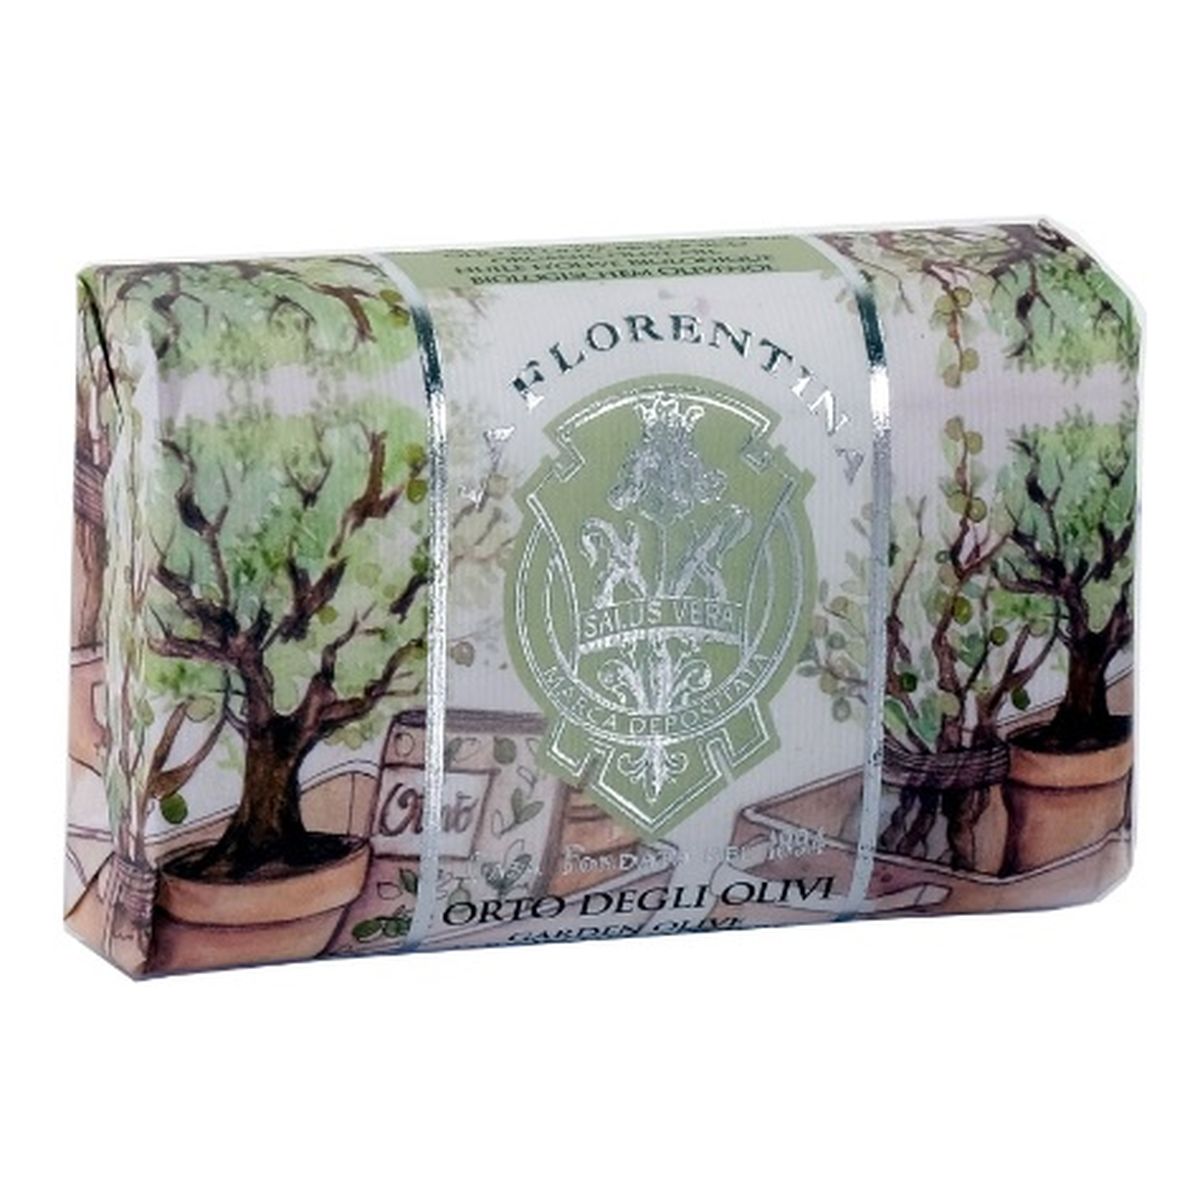 La Florentina Bath Soap mydło do kąpieli Garden Olive 200g